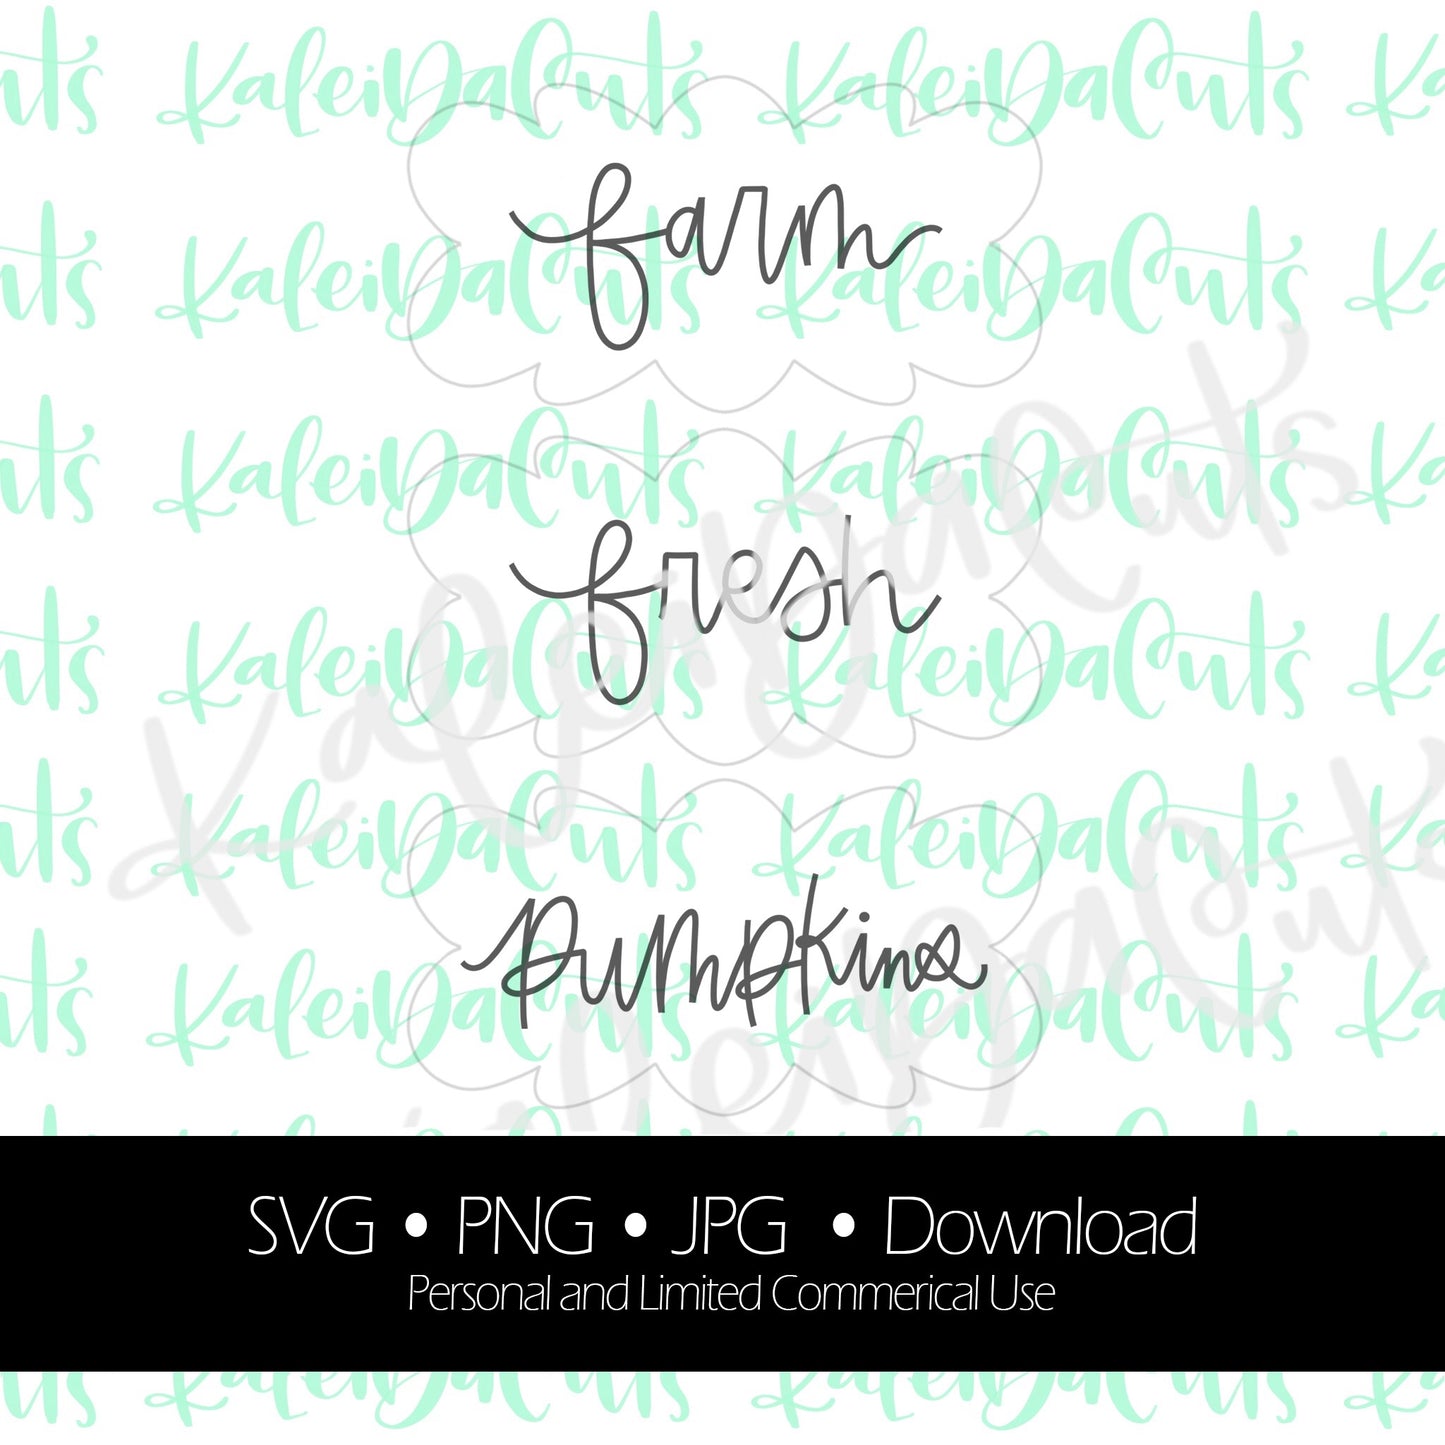 Farm Fresh Pumpkins Lettering. Digital Download. SVG.